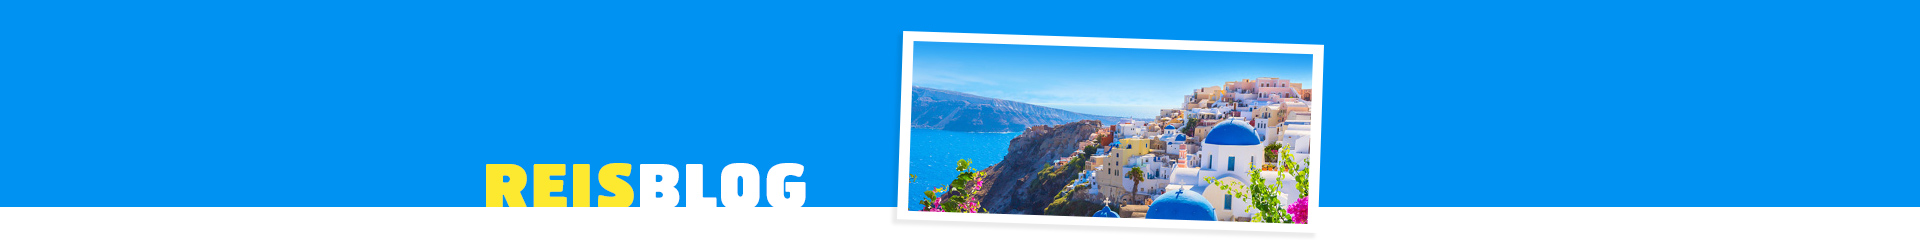 Santorini: het vakantieparadijs!